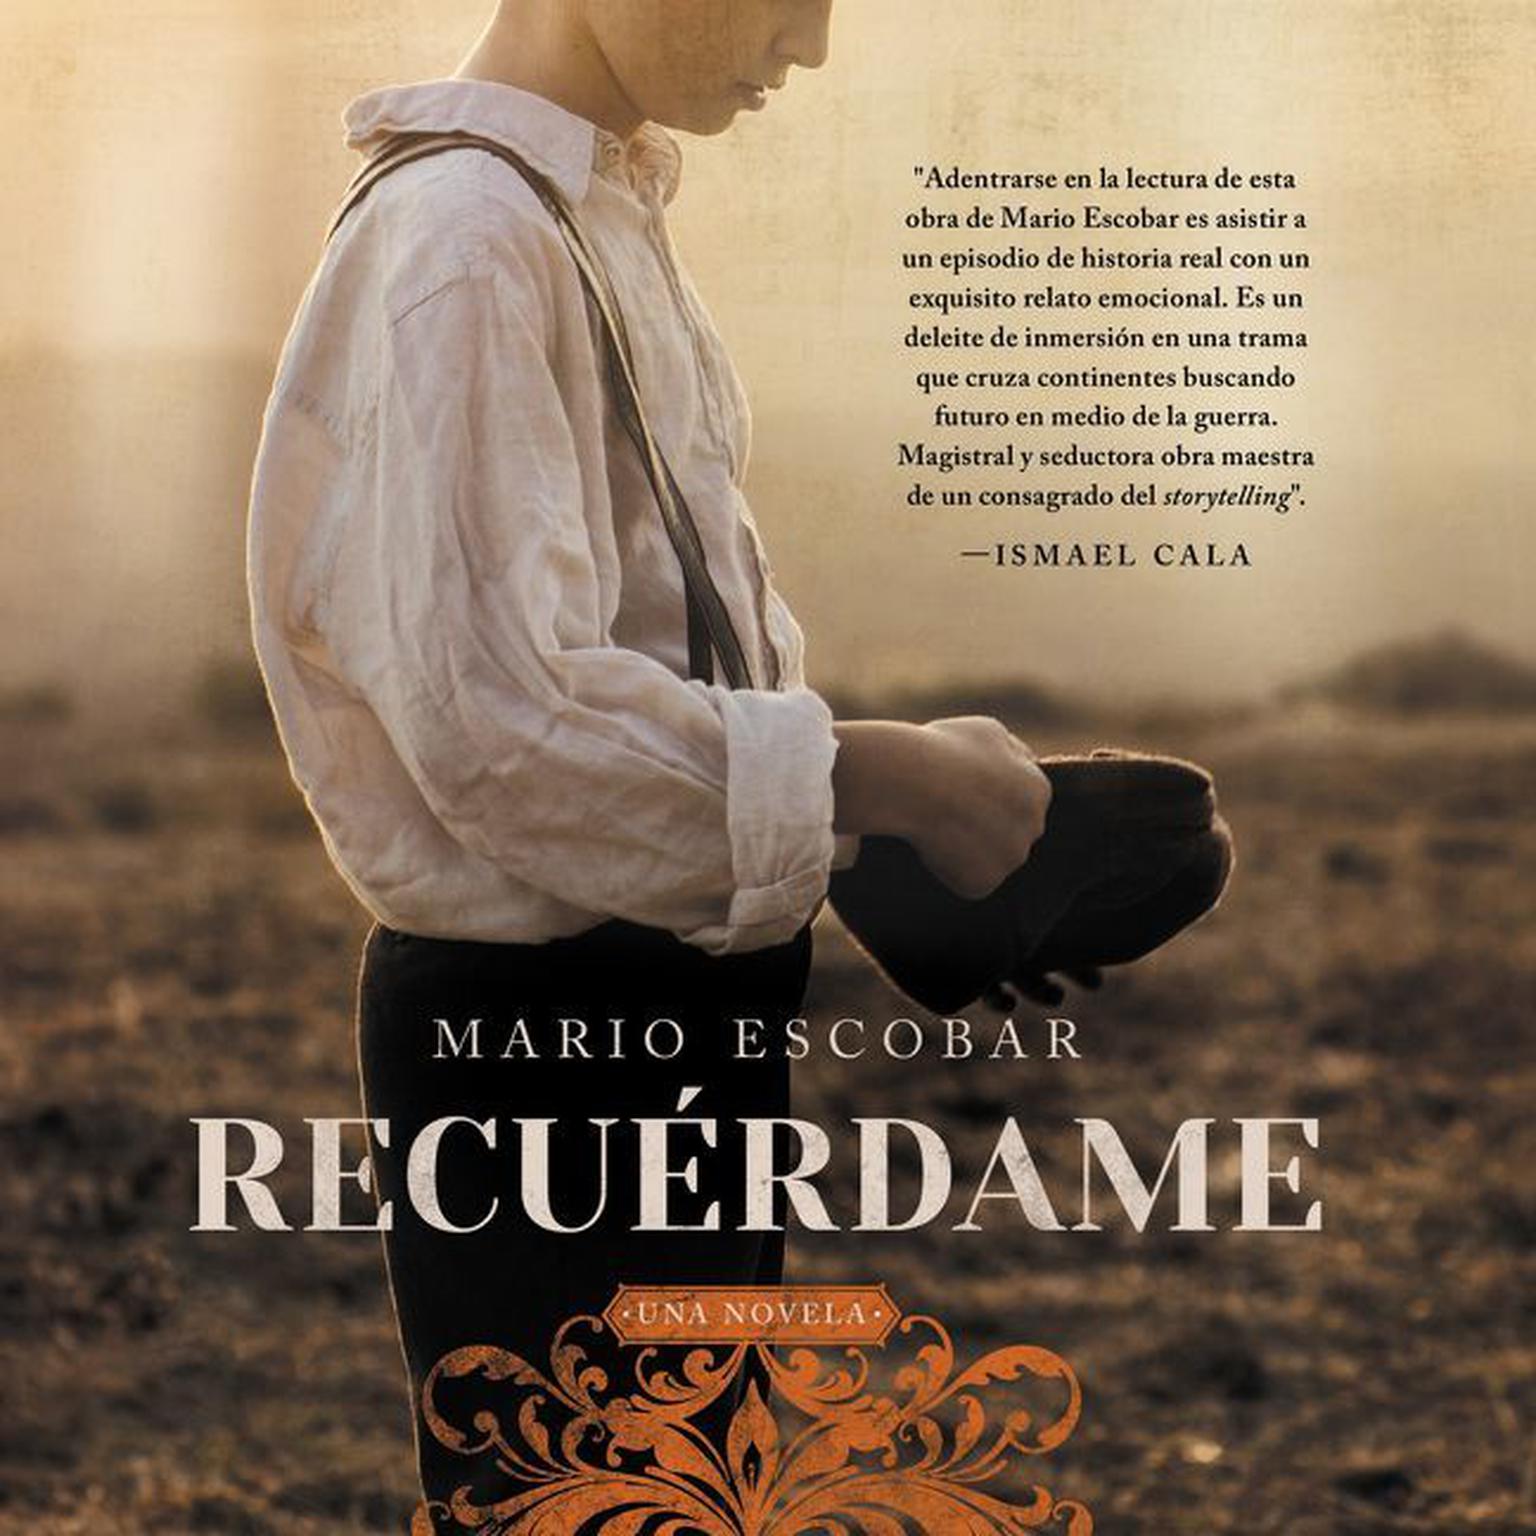 Remember Me Recuérdame (Spanish edition): El barco que salvo a quinientos ninos republicanos de la Guerra Civil Espanola Audiobook, by Mario Escobar